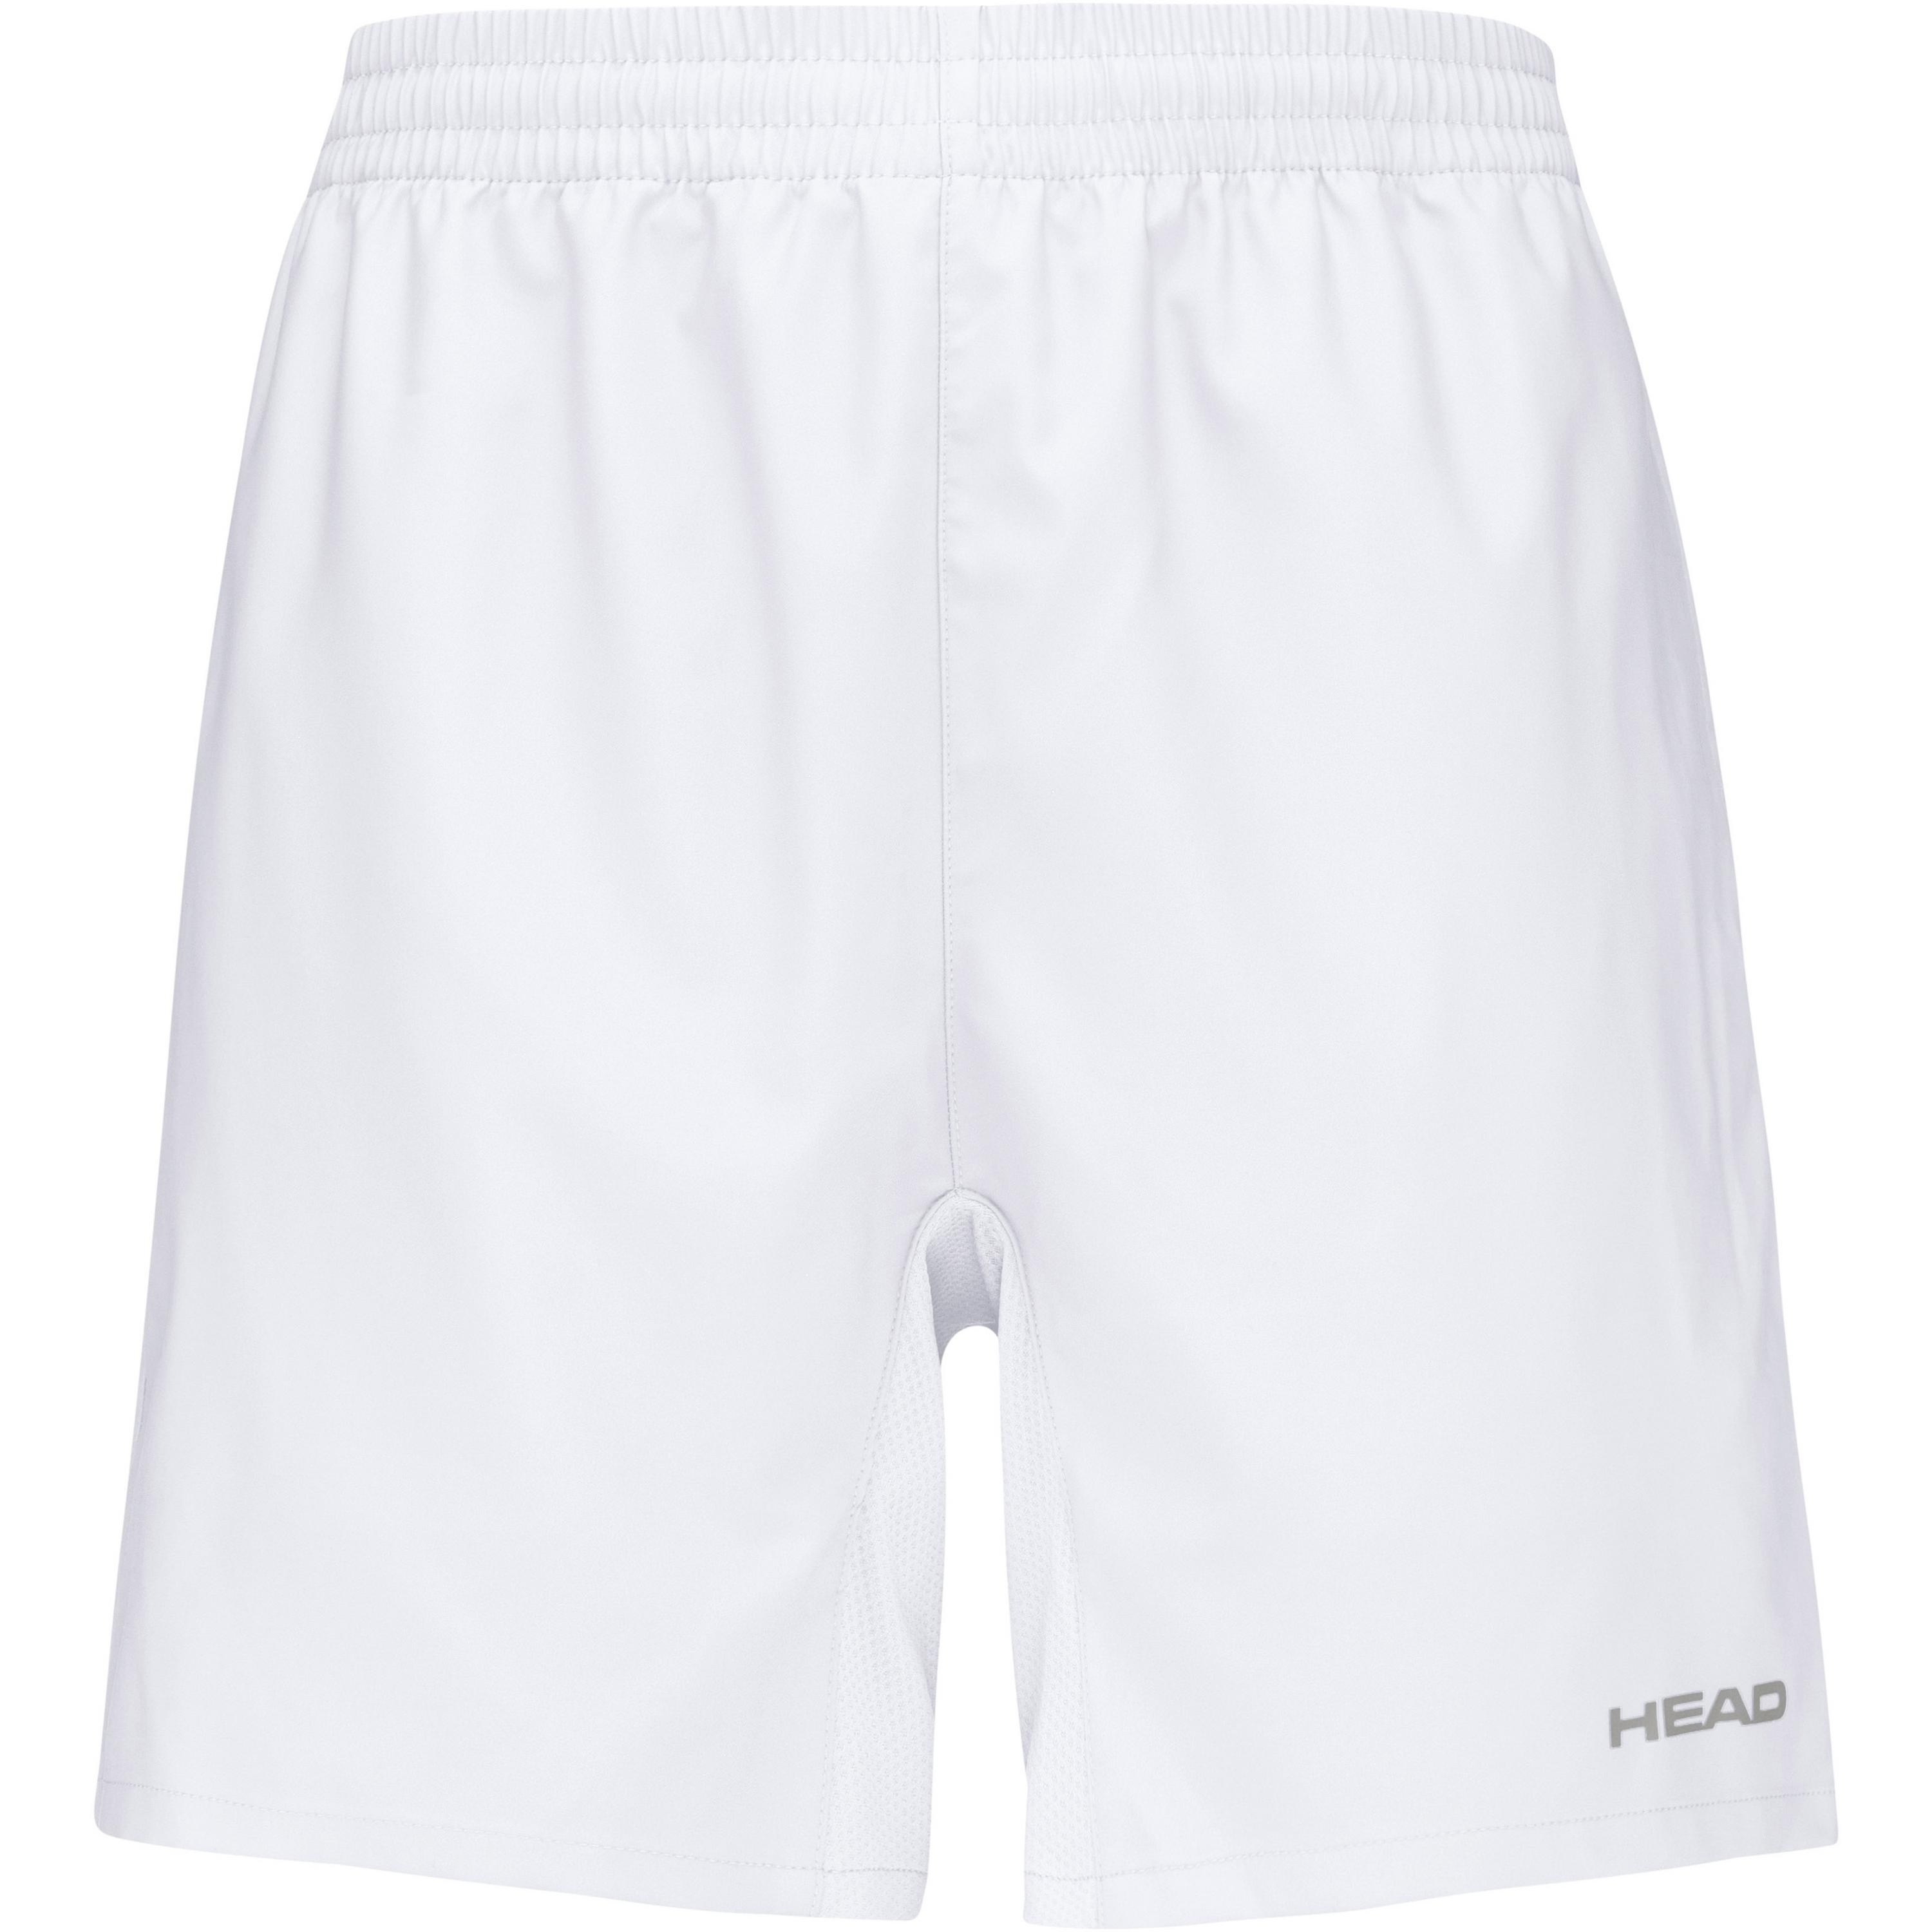 HEAD CLUB Tennisshorts Jungen in white, Größe 164 - weiß